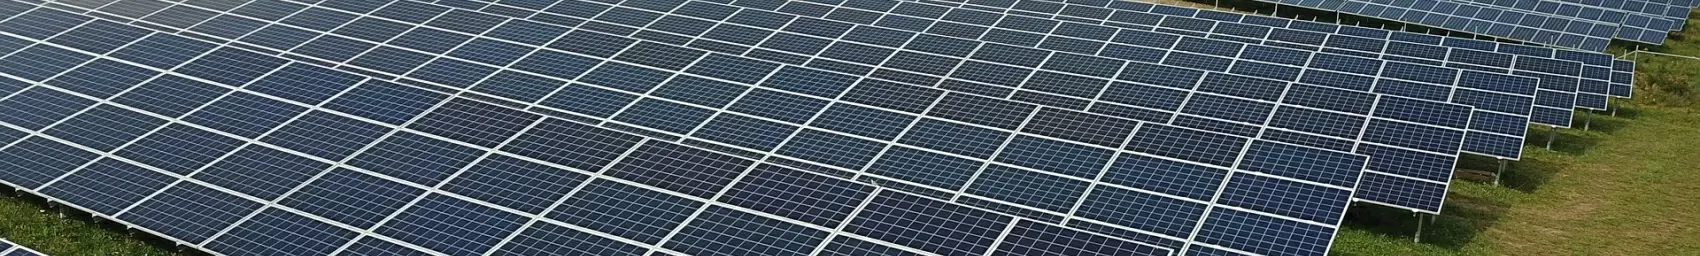 Paneles de energíasolar fotovoltaica